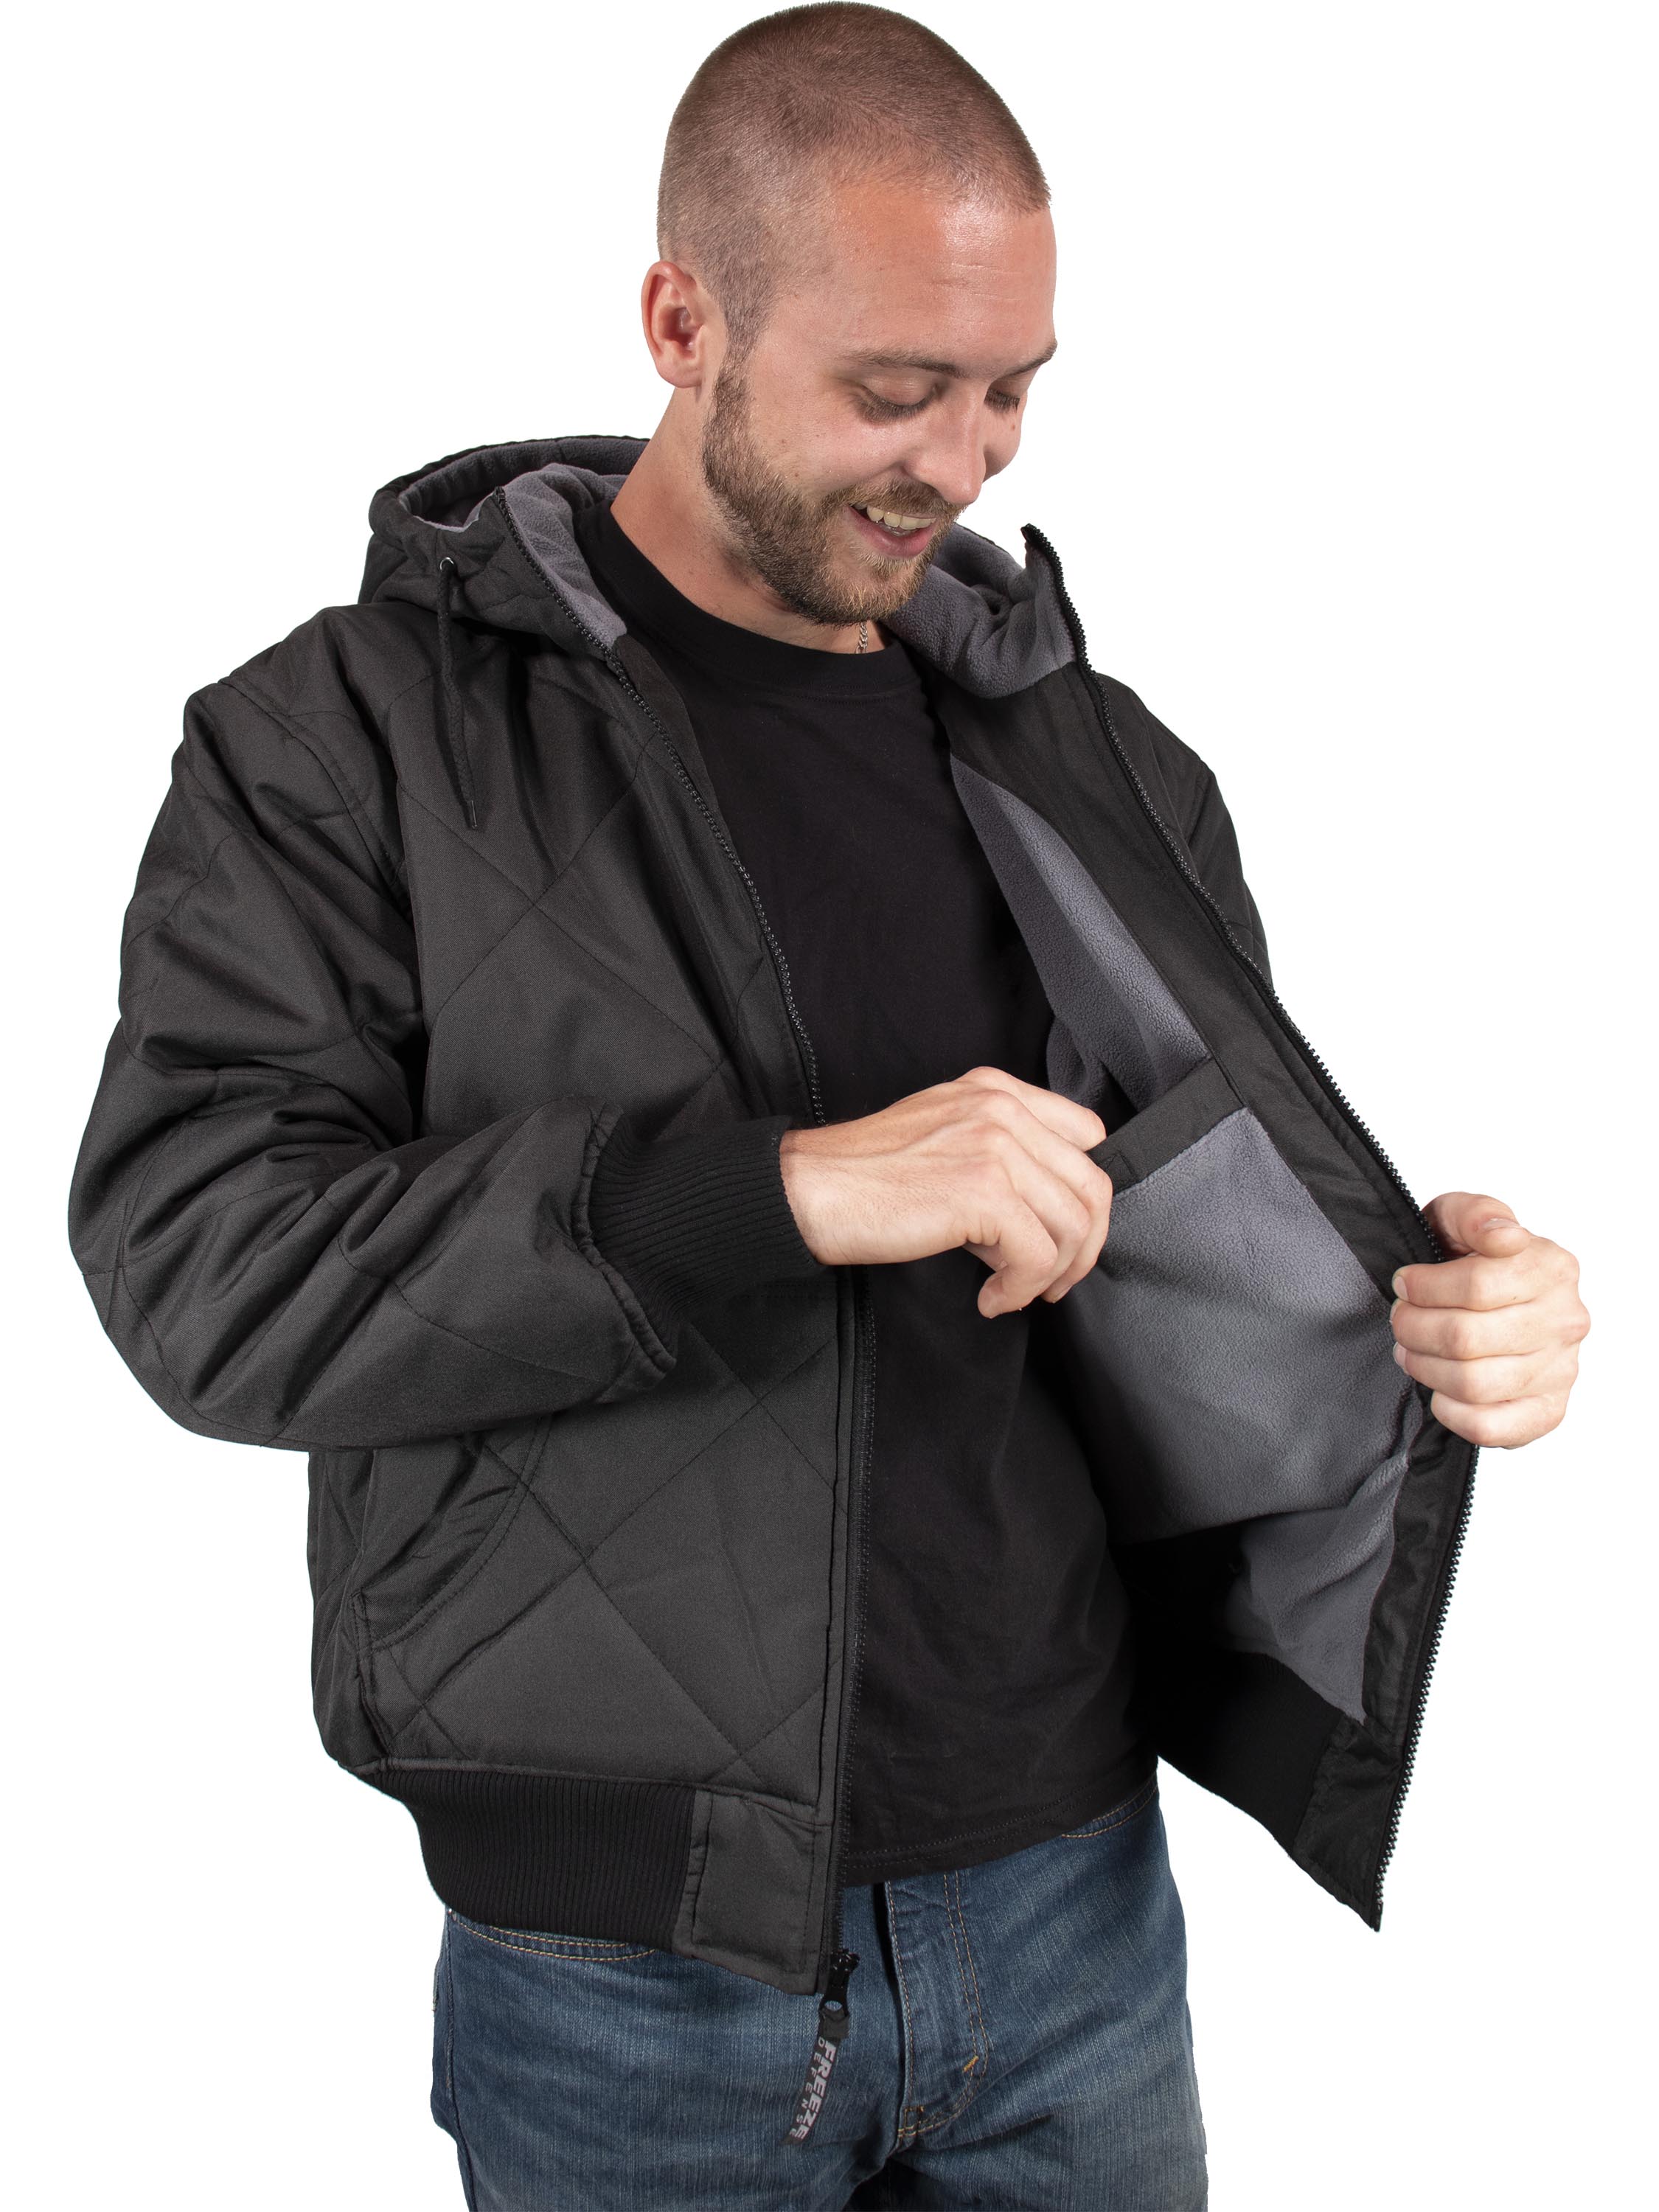 Twcx Mens Winter Outwear Buttons Hooded Linen Fleece Down Jacket Coat 